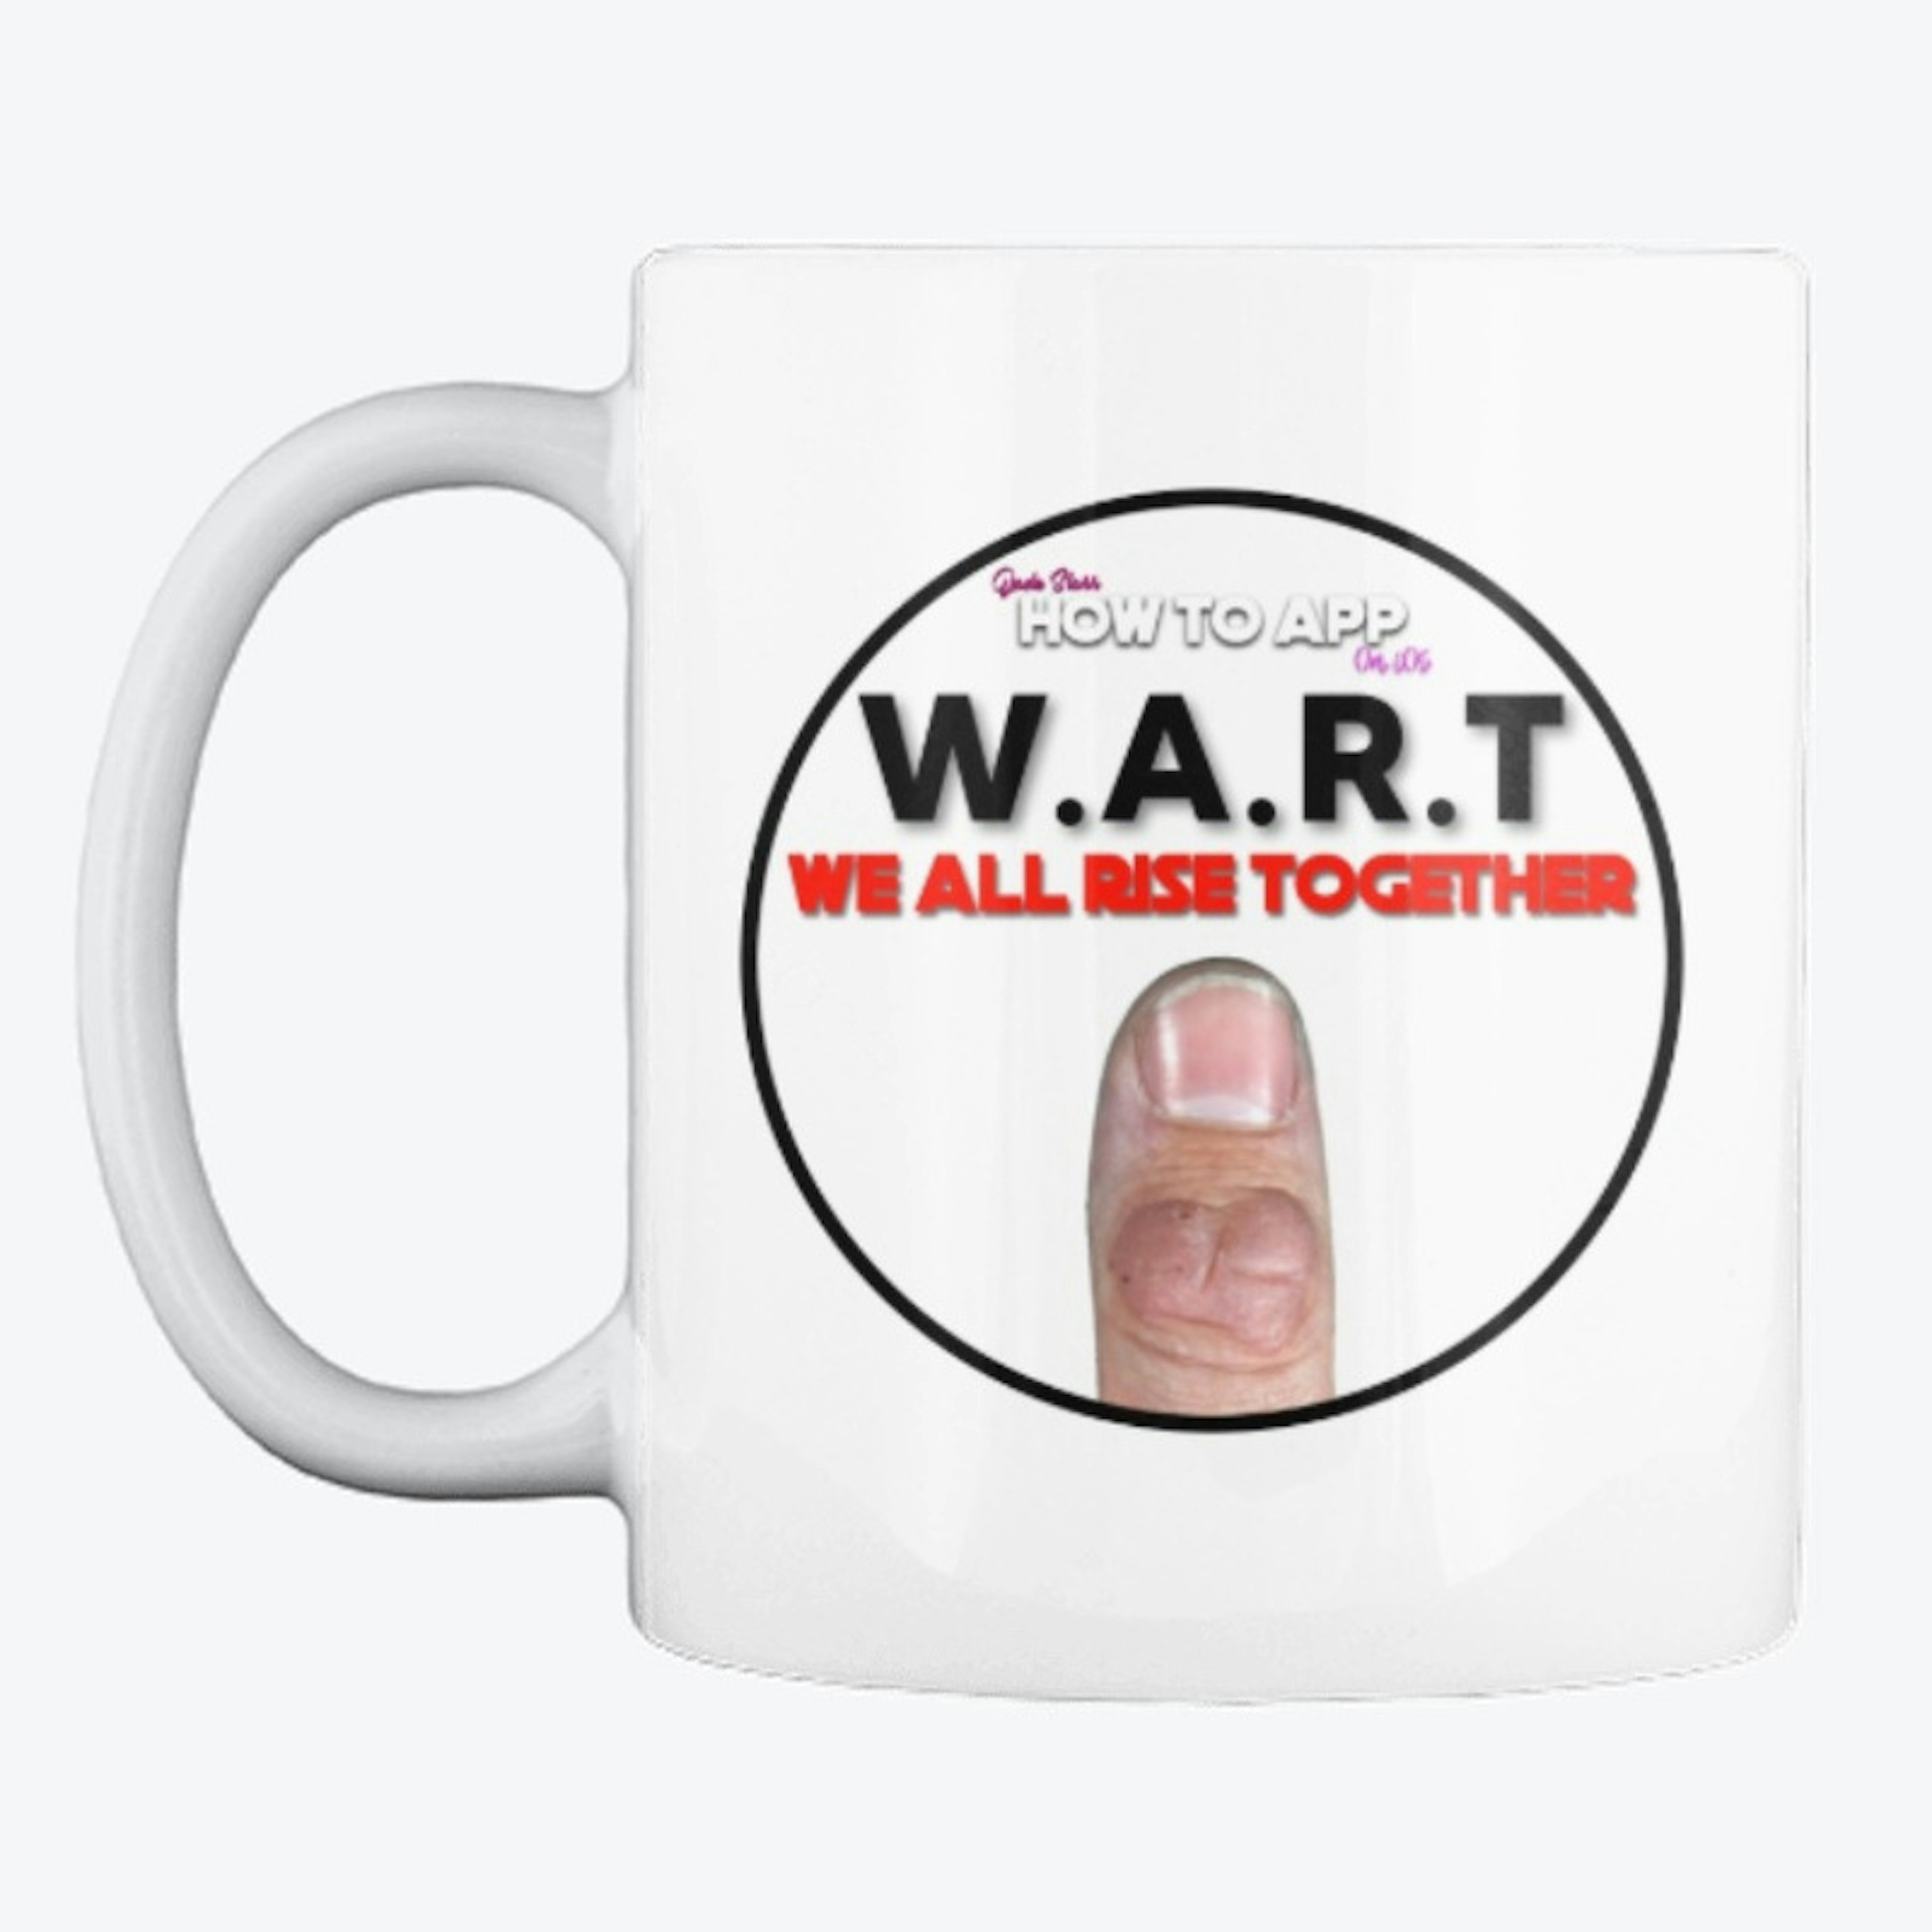 W.A.R.T Mug